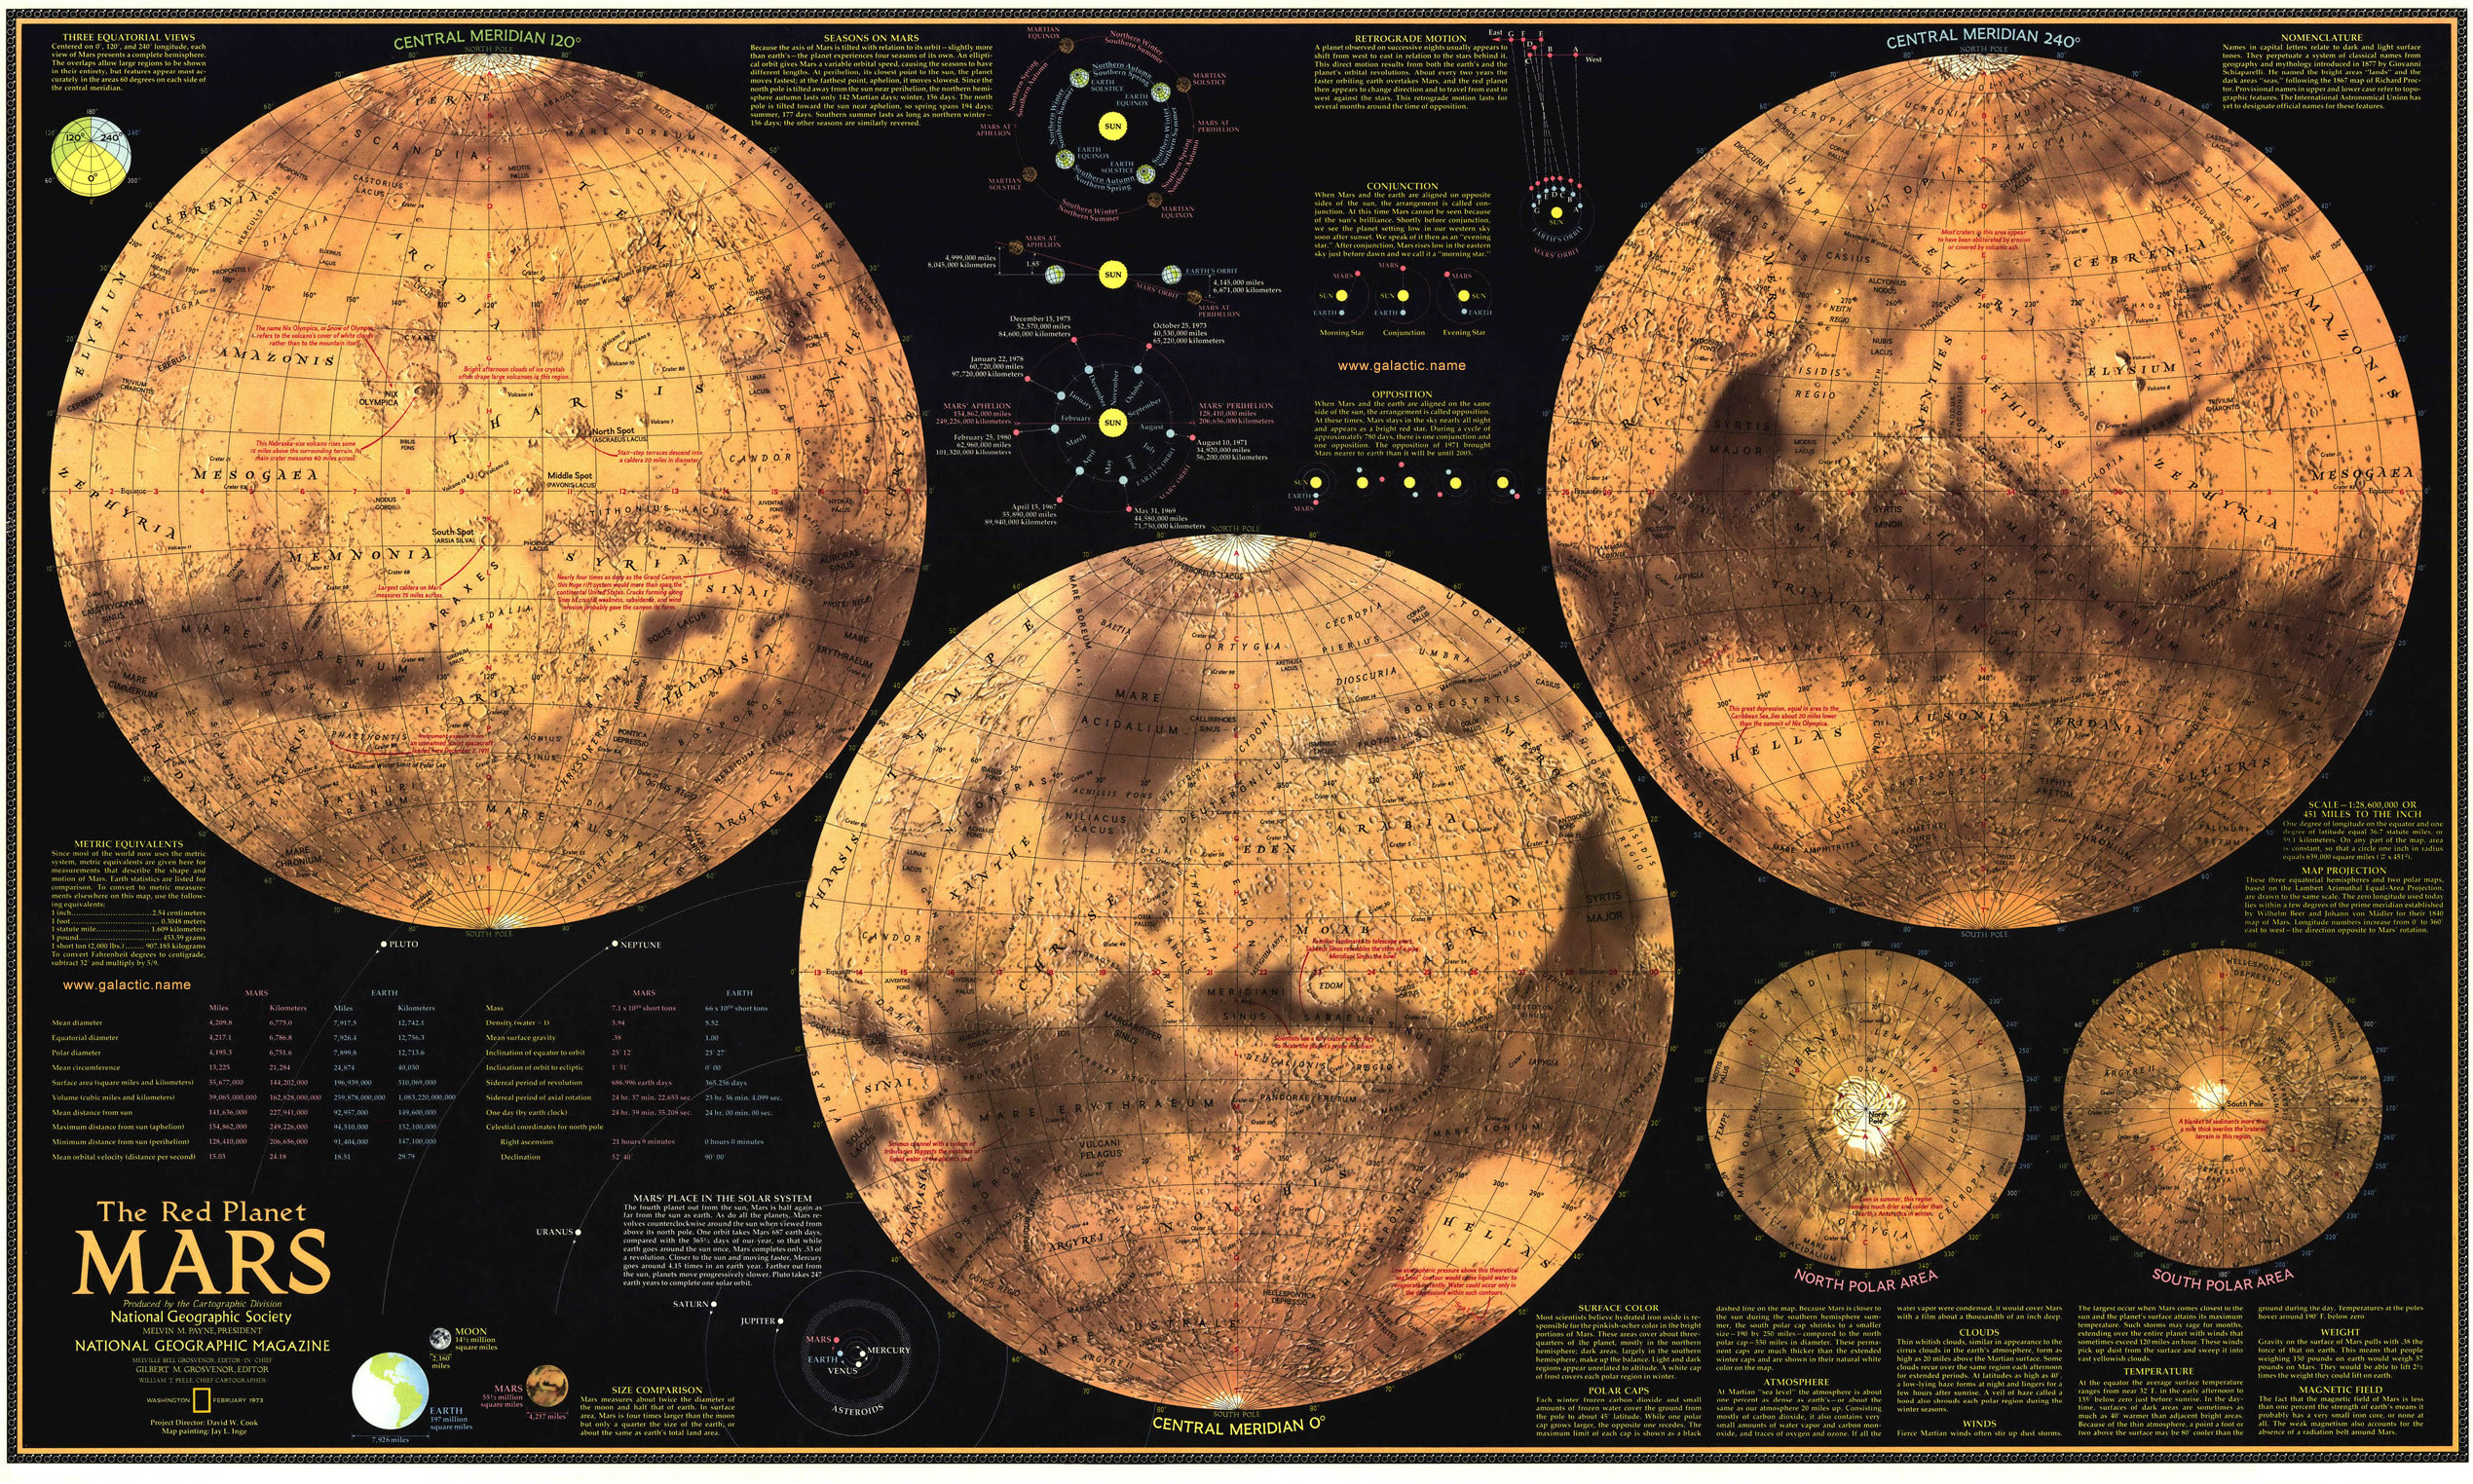 Карта планеты Марс от National Geographic